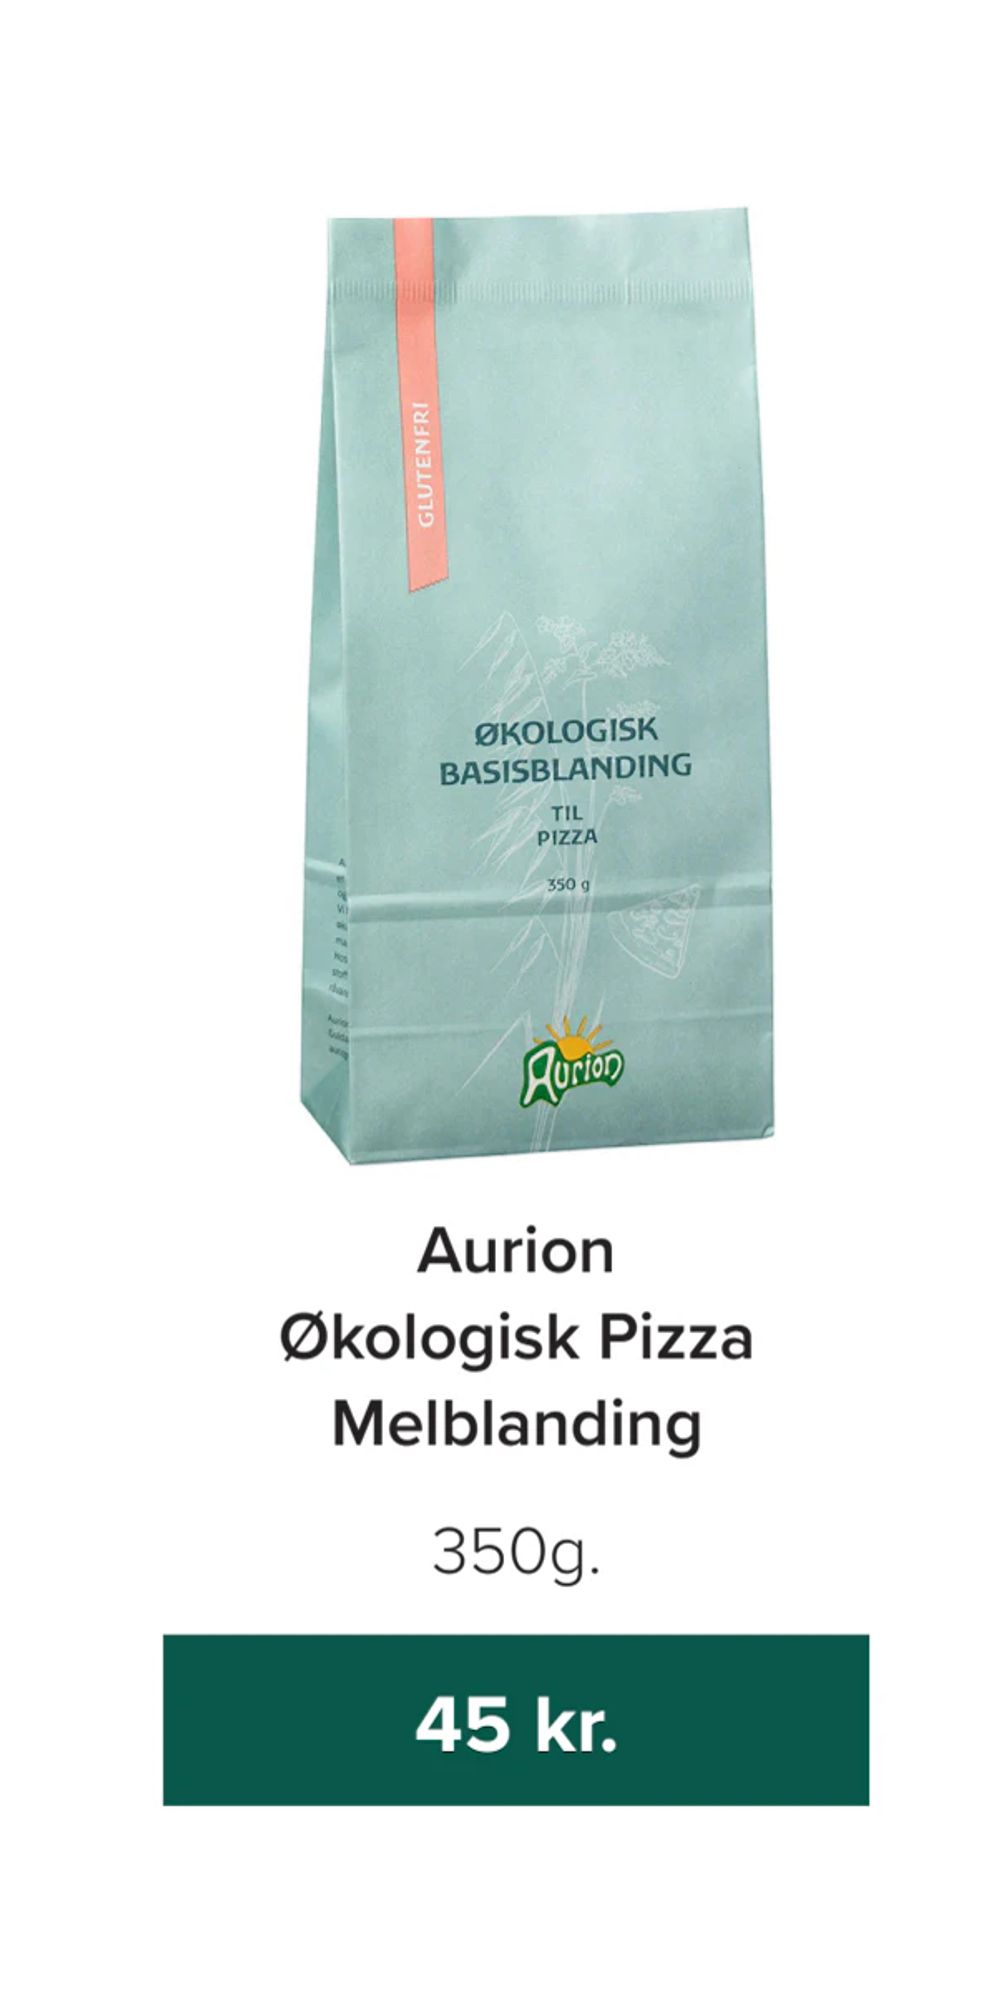 Tilbud på Aurion Økologisk Pizza Melblanding fra Helsemin til 45 kr.